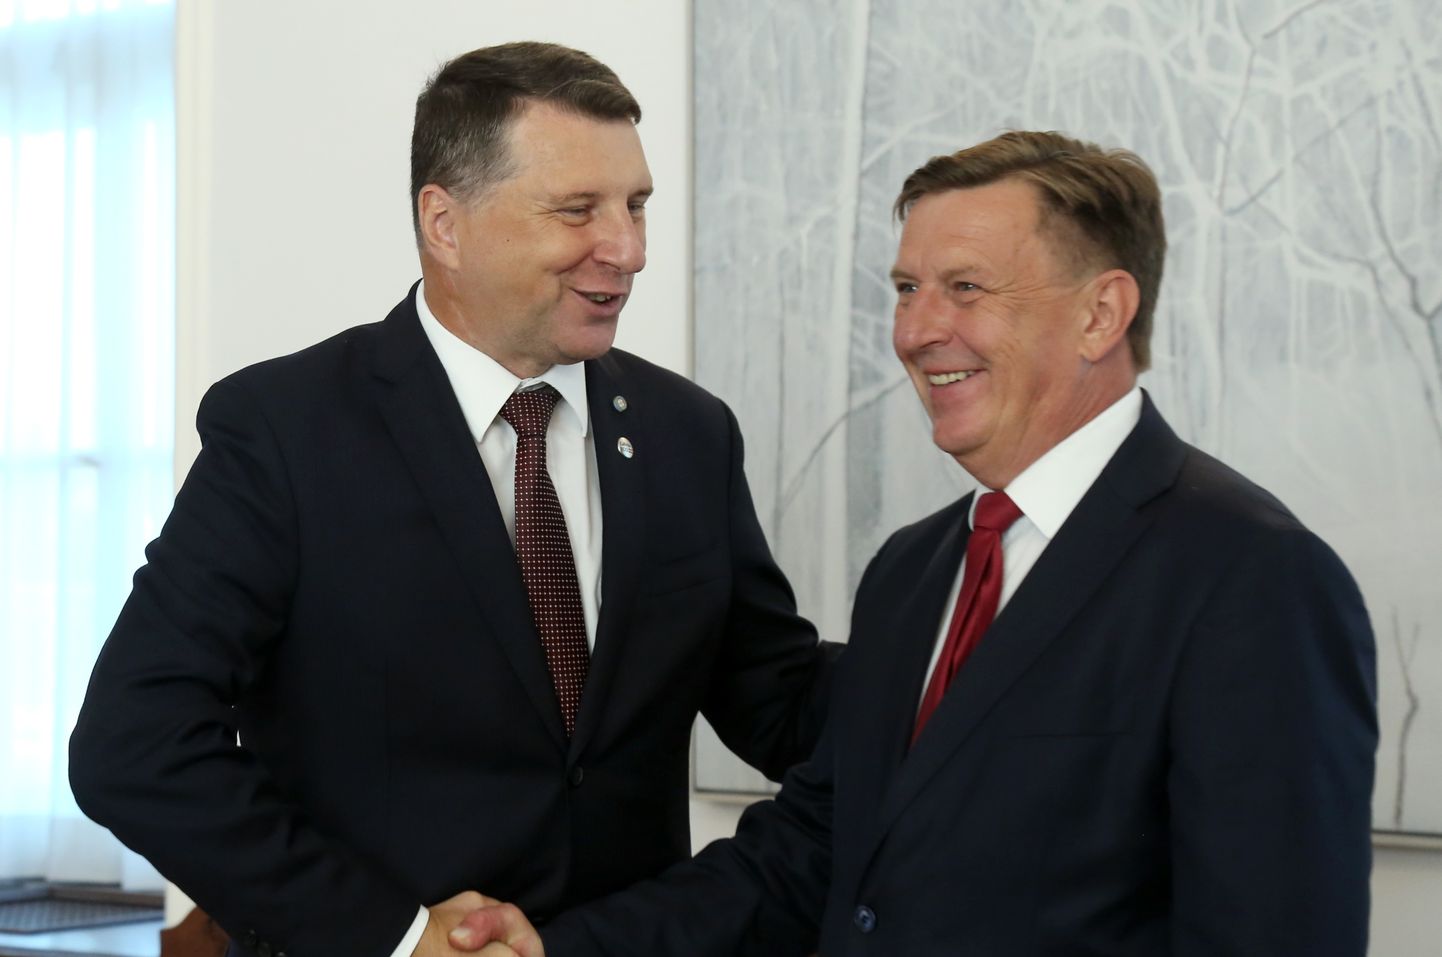 Valsts prezidents Raimonds Vējonis (no kreisās) un Ministru prezidents Māris Kučinskis tikšanās laikā Rīgas pilī.